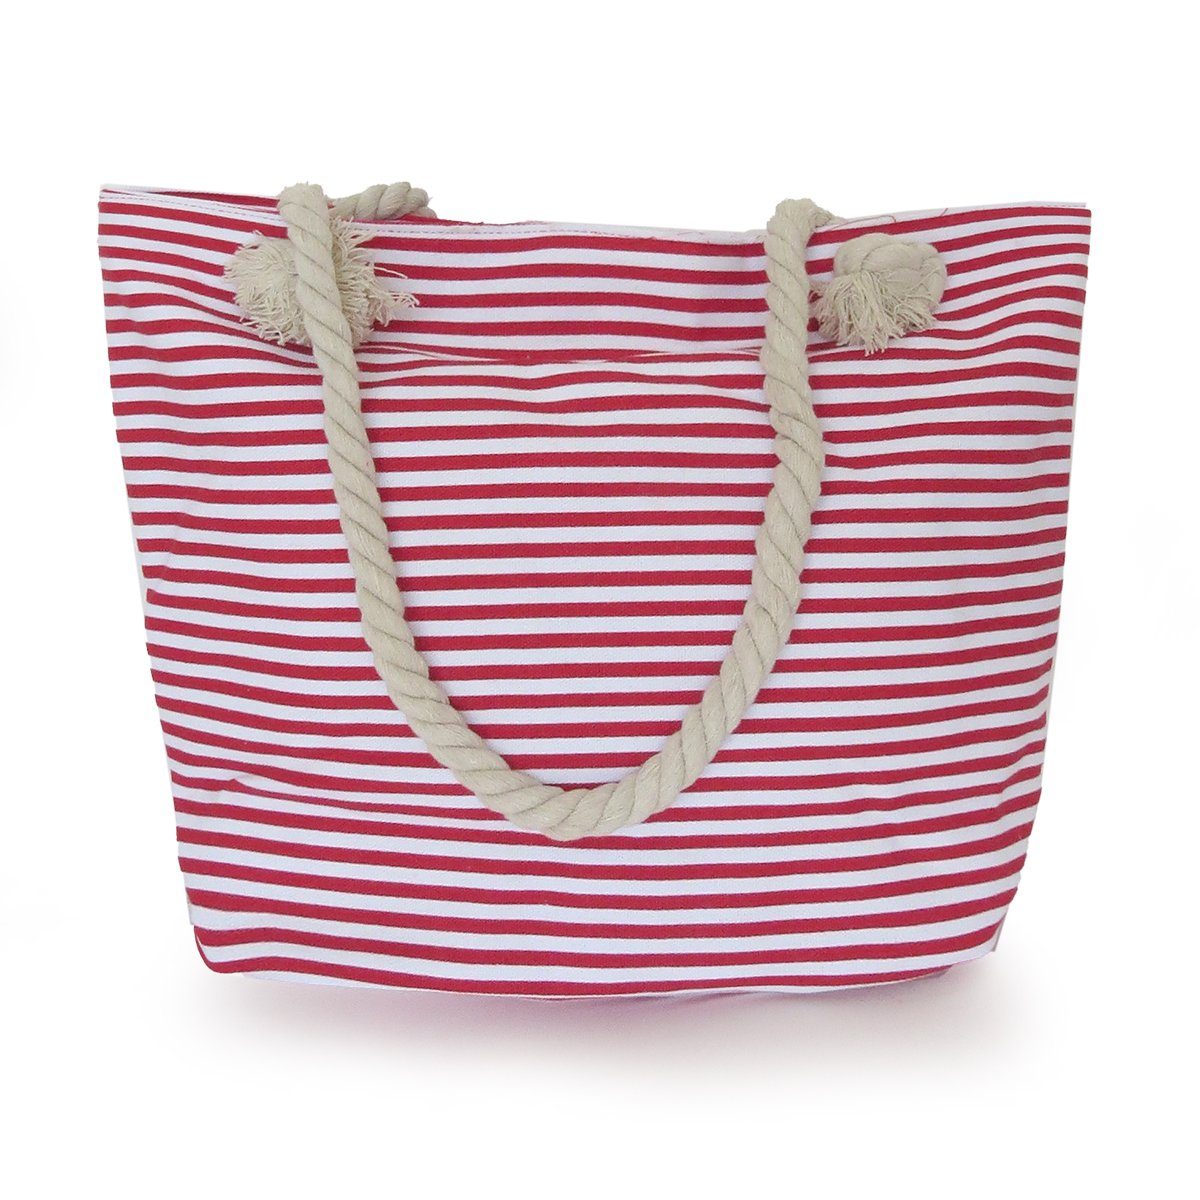 Sonia Originelli Umhängetasche Strandtasche mit Ankerprint rot-marine Seilkordel maritim Reißverschluss